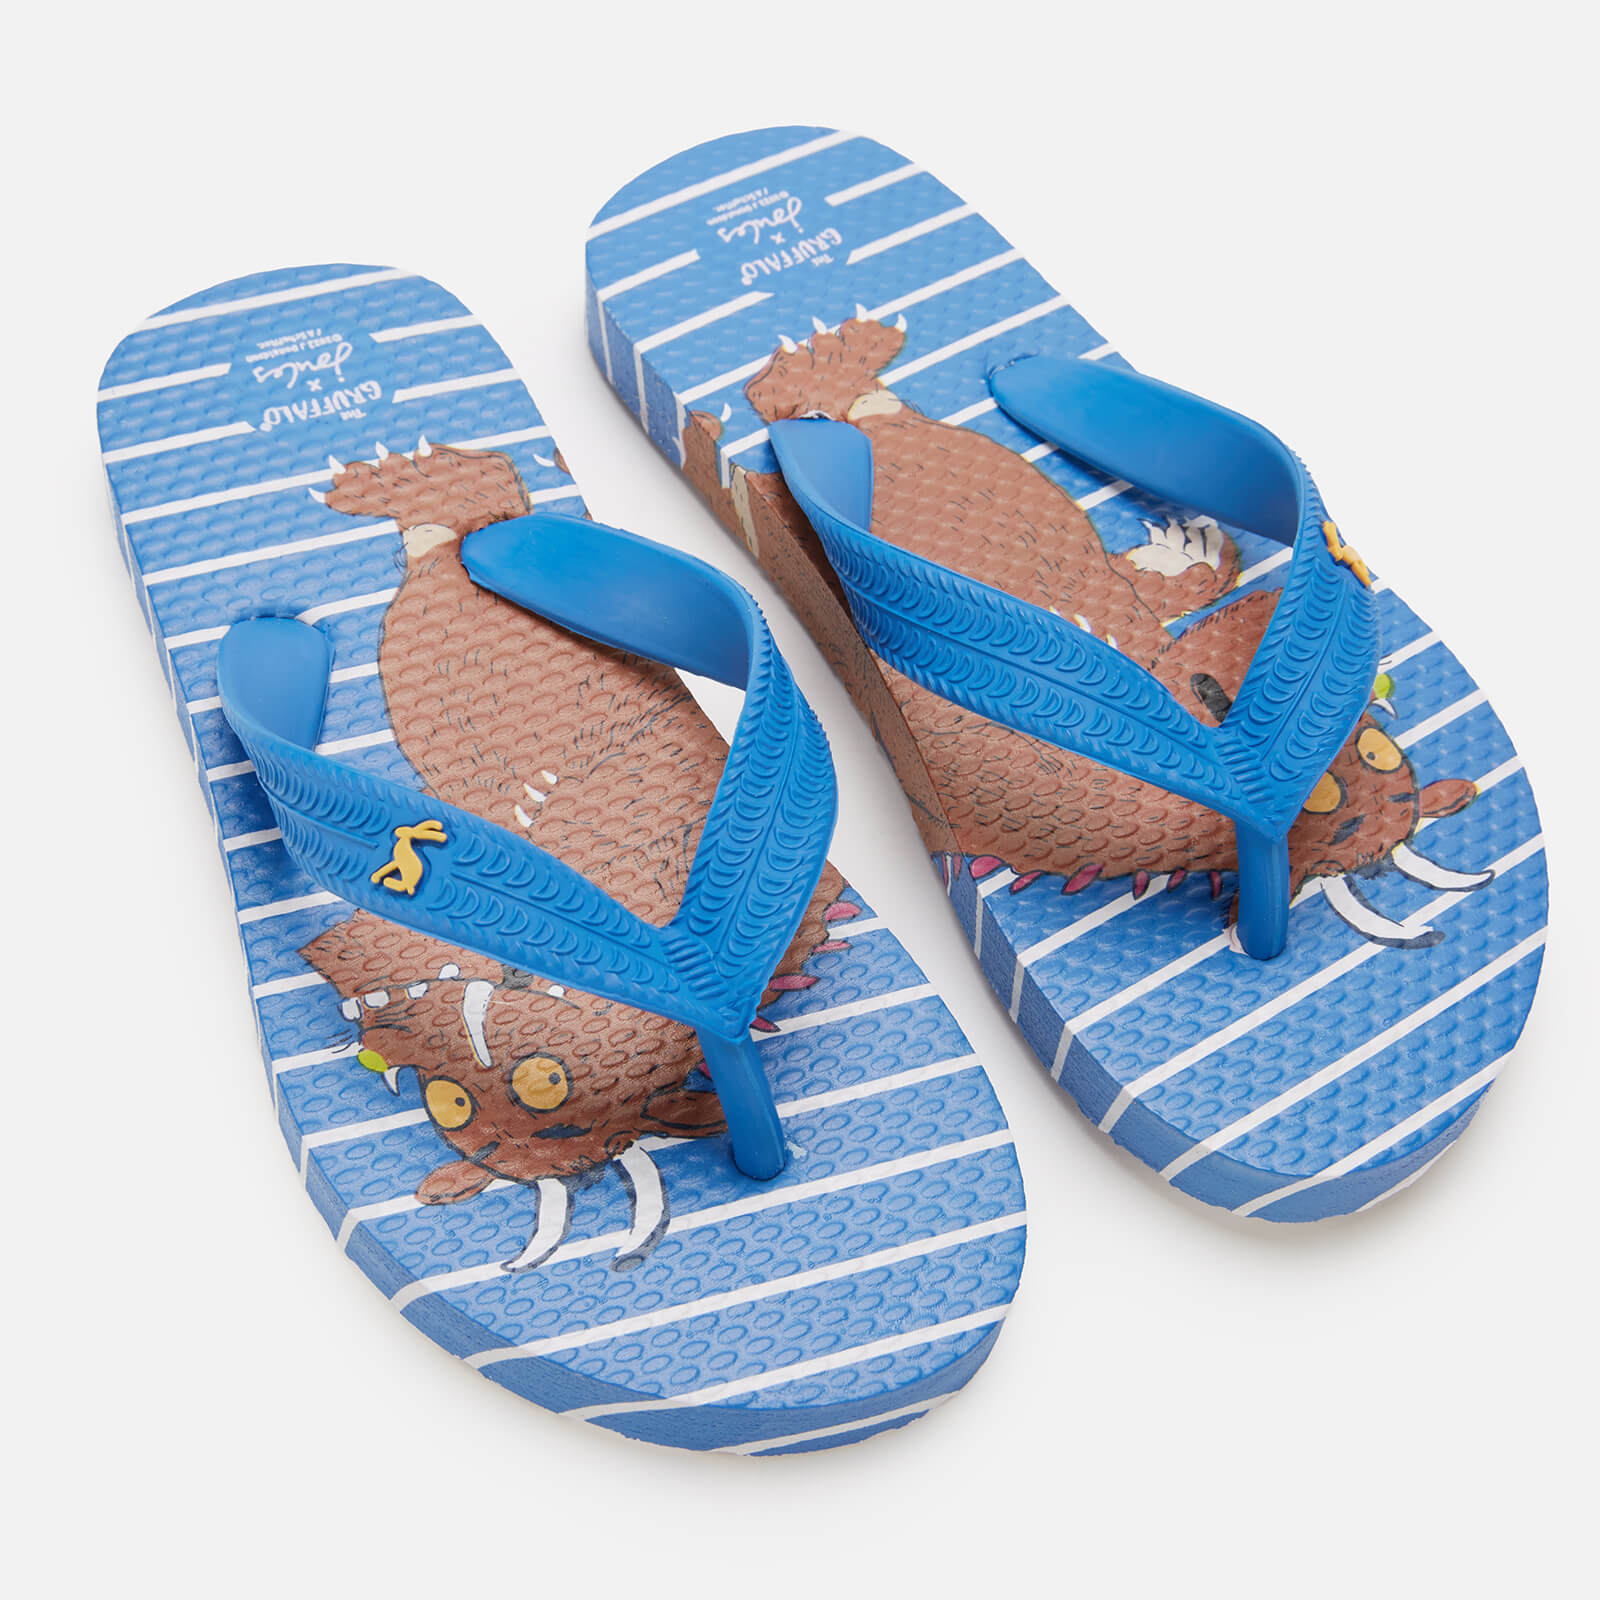 joules kids' lightweight summer sandals - gruffalo blue - uk 13 kids